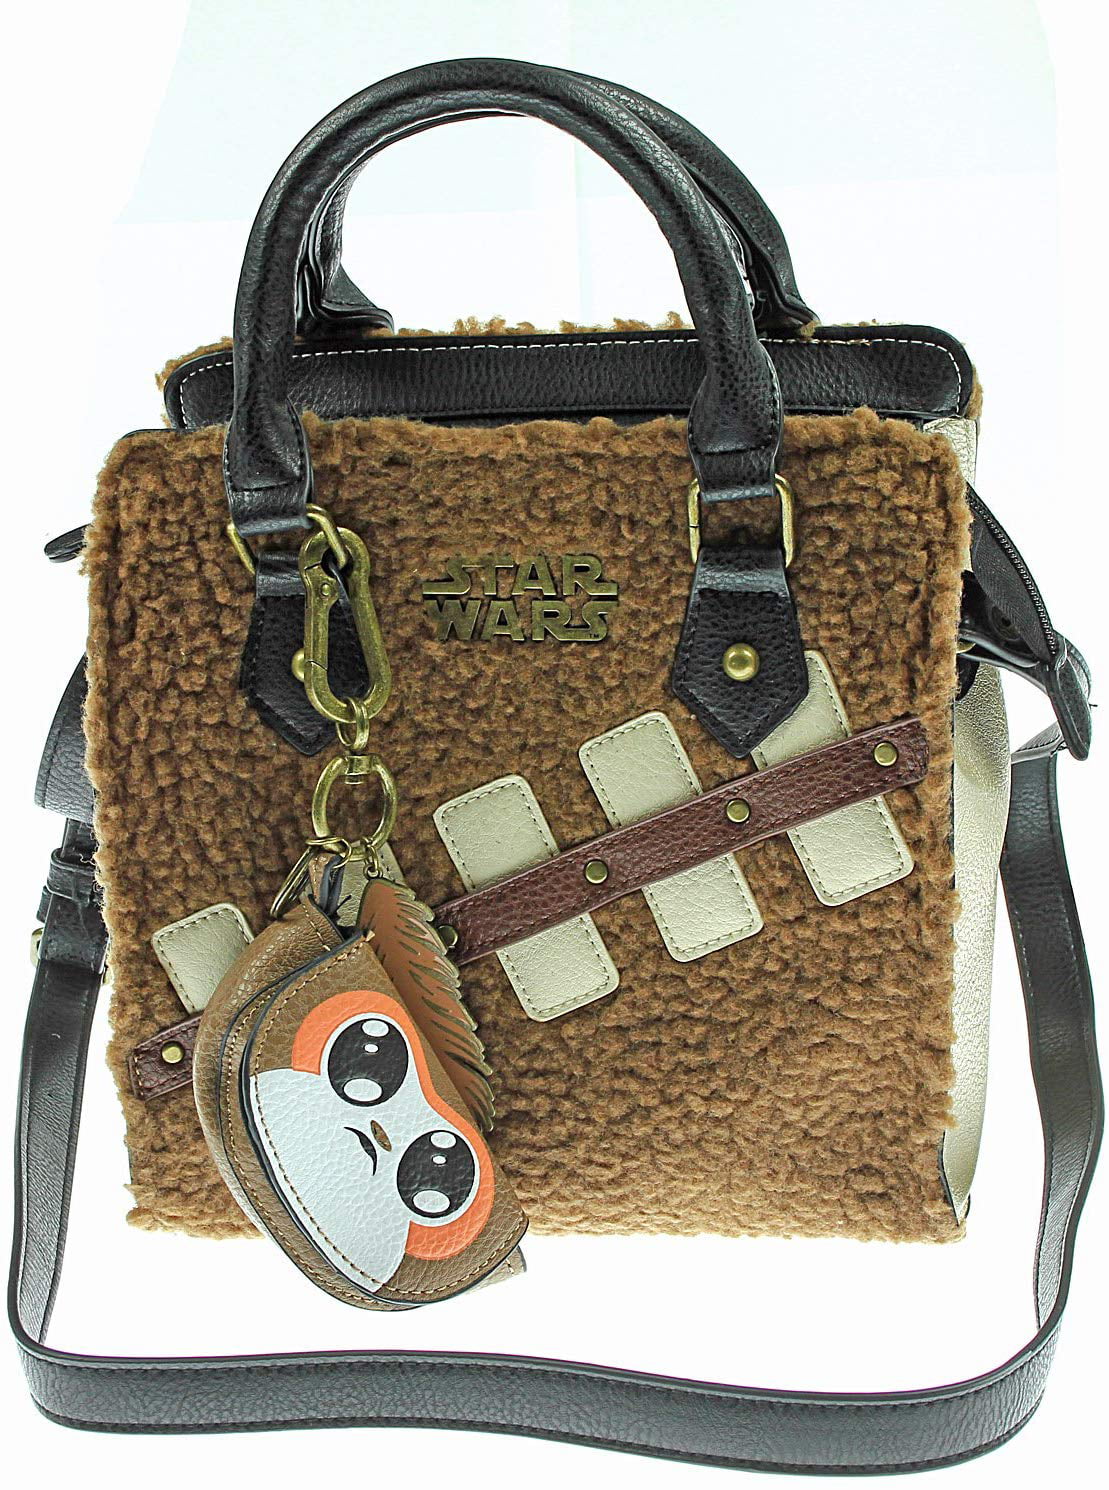 Star Wars Episode 8 The Last Jedi Chewbacca and Porg Mini Brief Handbag Purse 